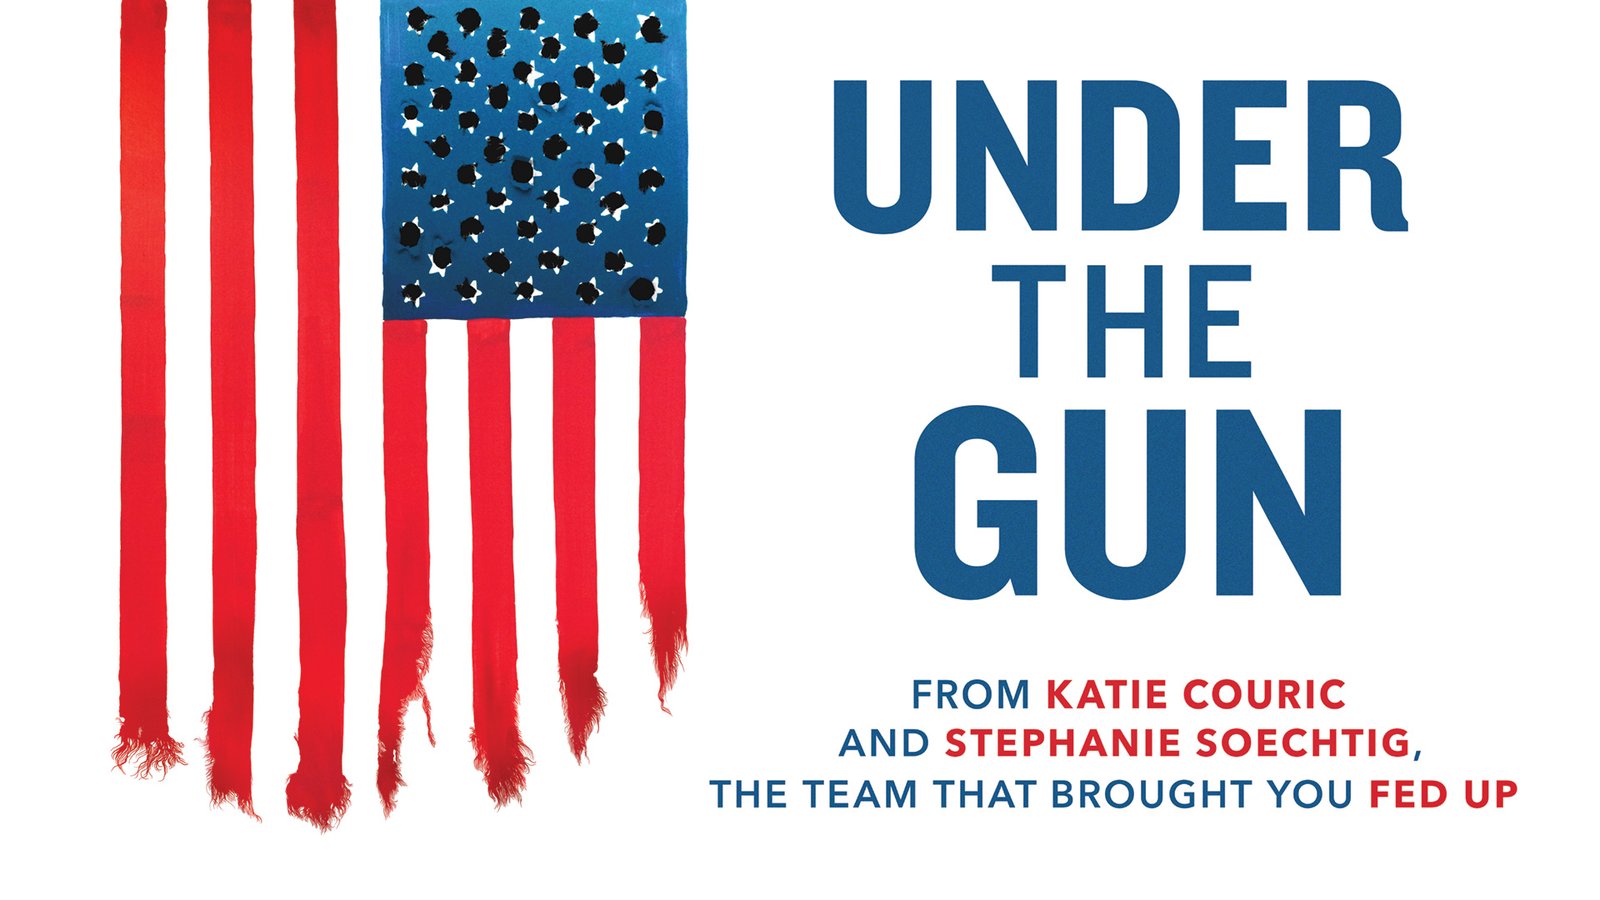 Under the Gun - An Inside Look at the U.S. Gun Debate